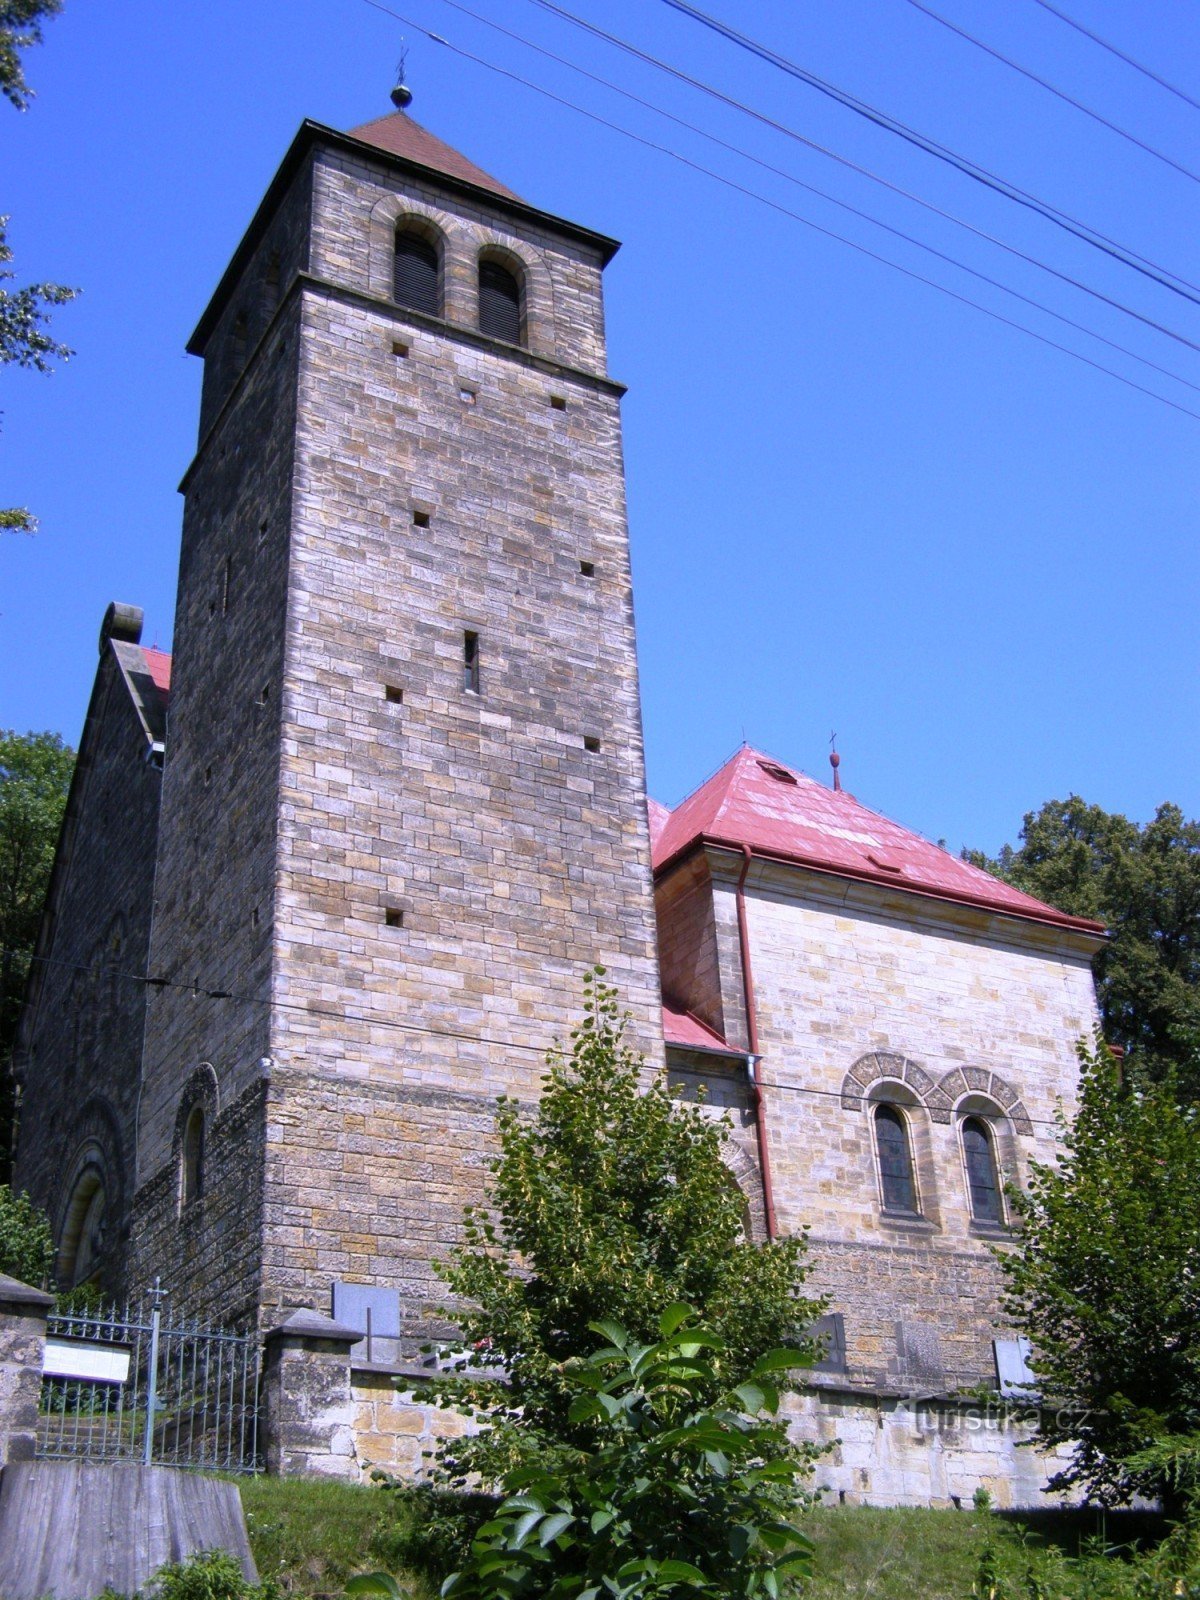 Vyskeř - Église de l'Assomption de la Vierge Marie avec un clocher en bois